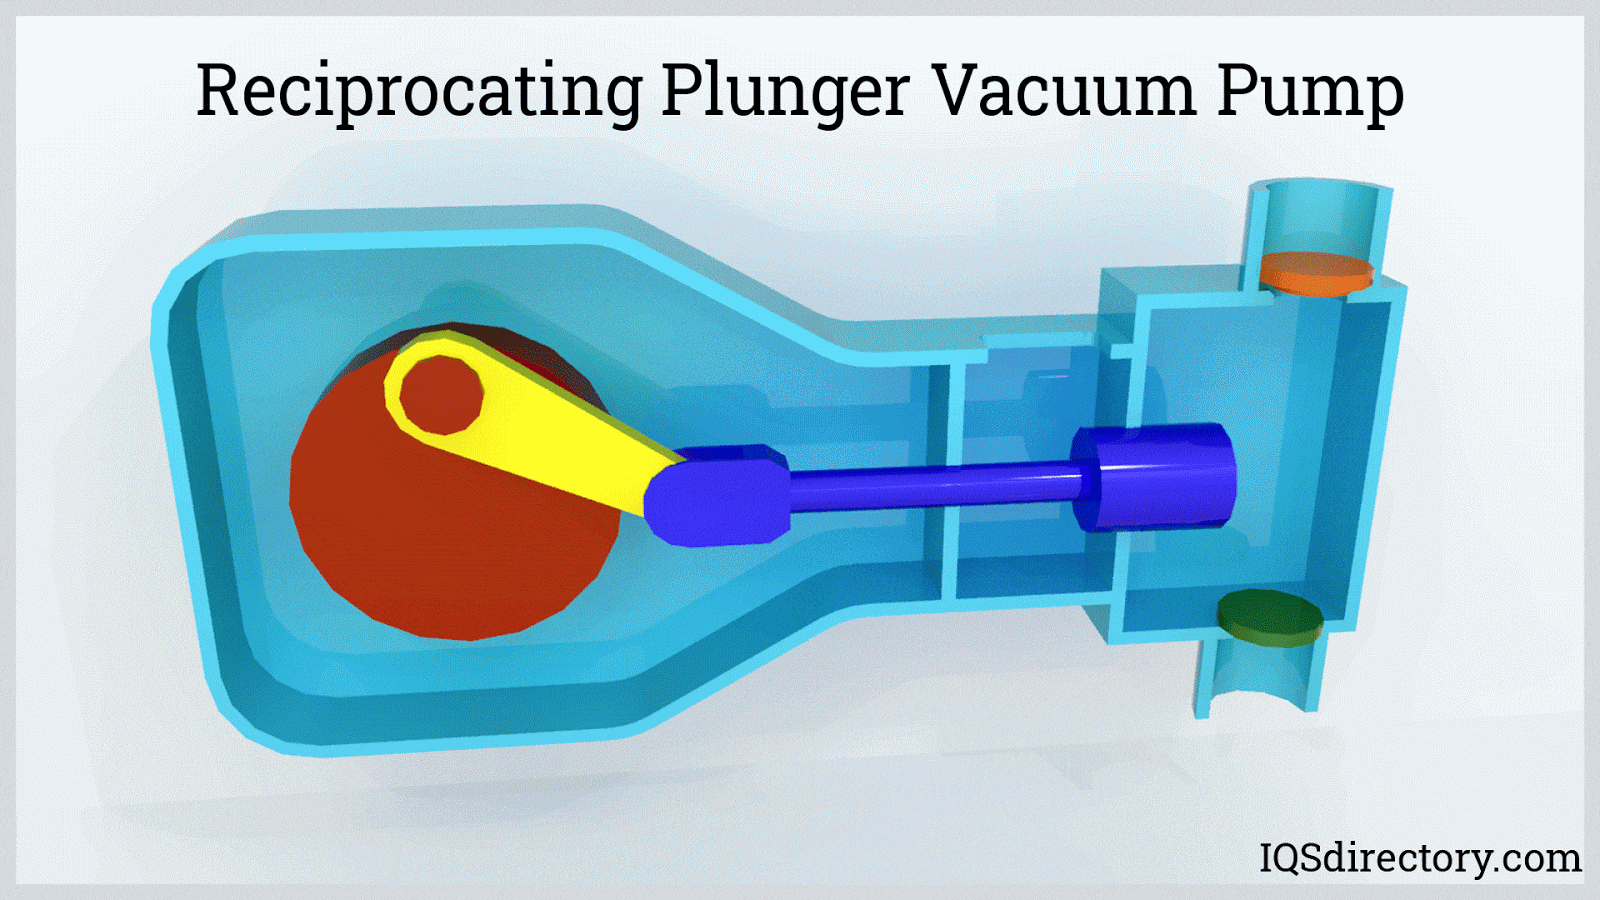 Reciprocating Plunger Vacuum Pump